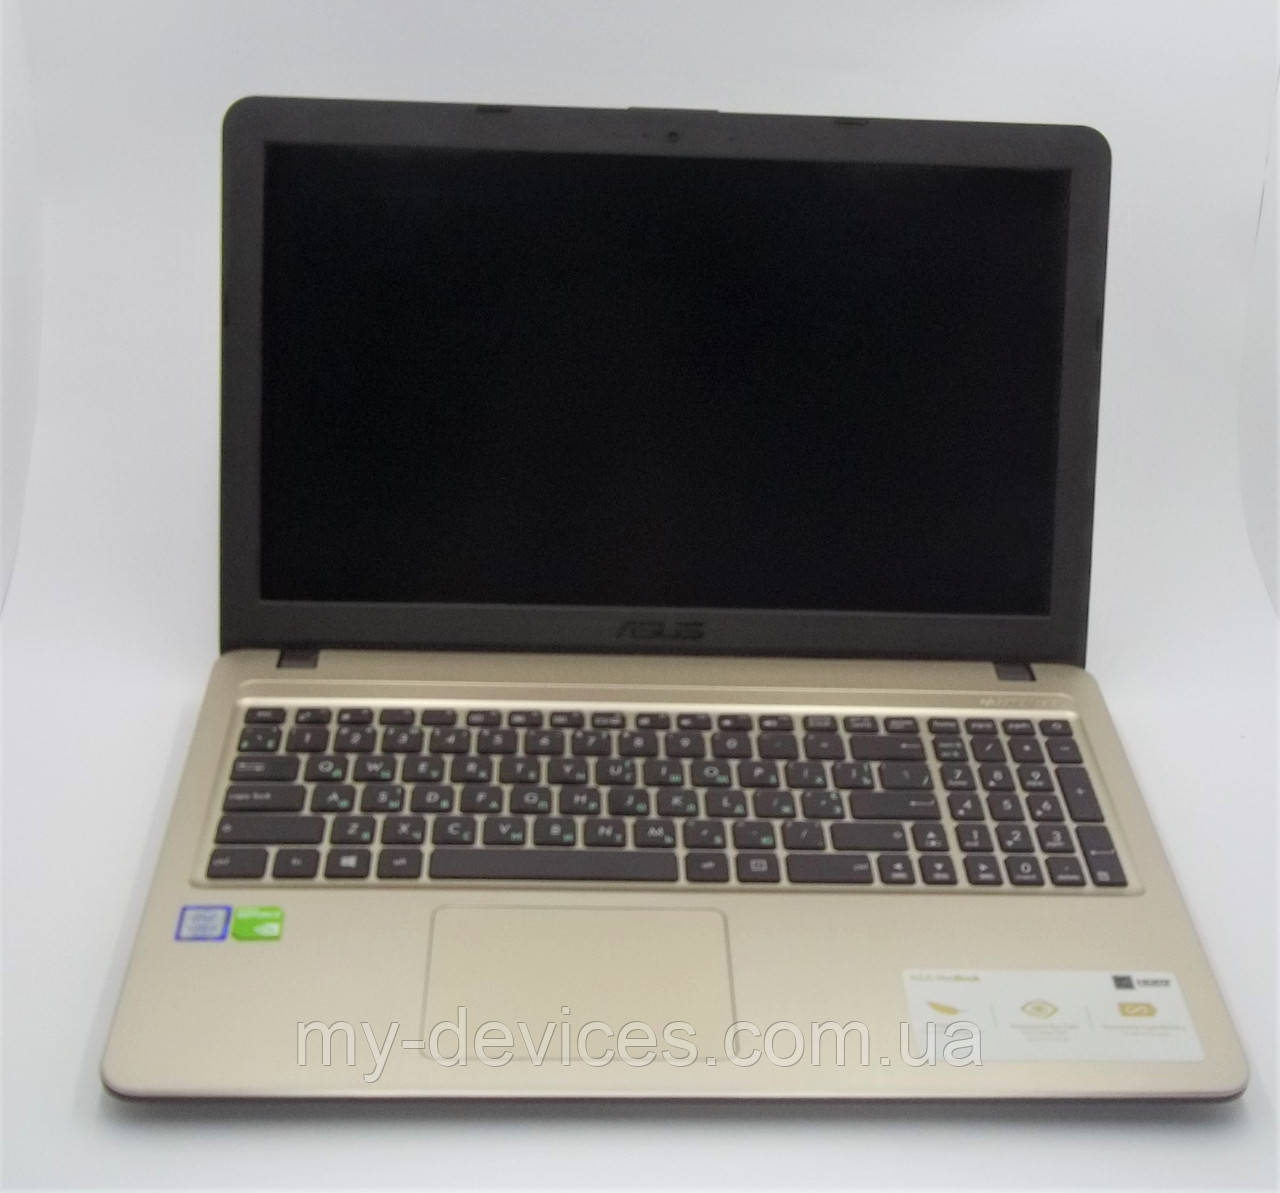 

Ноутбук Asus X540UB-DM874, Золотистый